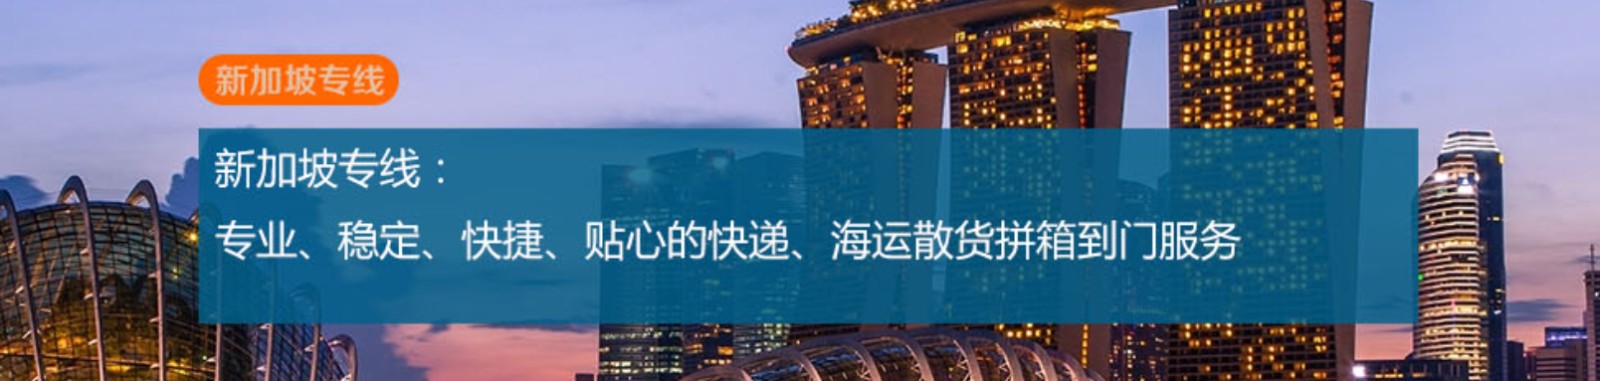 新加坡亚马逊FBA海运头程 新加坡空运亚马逊尾程派送 新加坡双清包税门到门